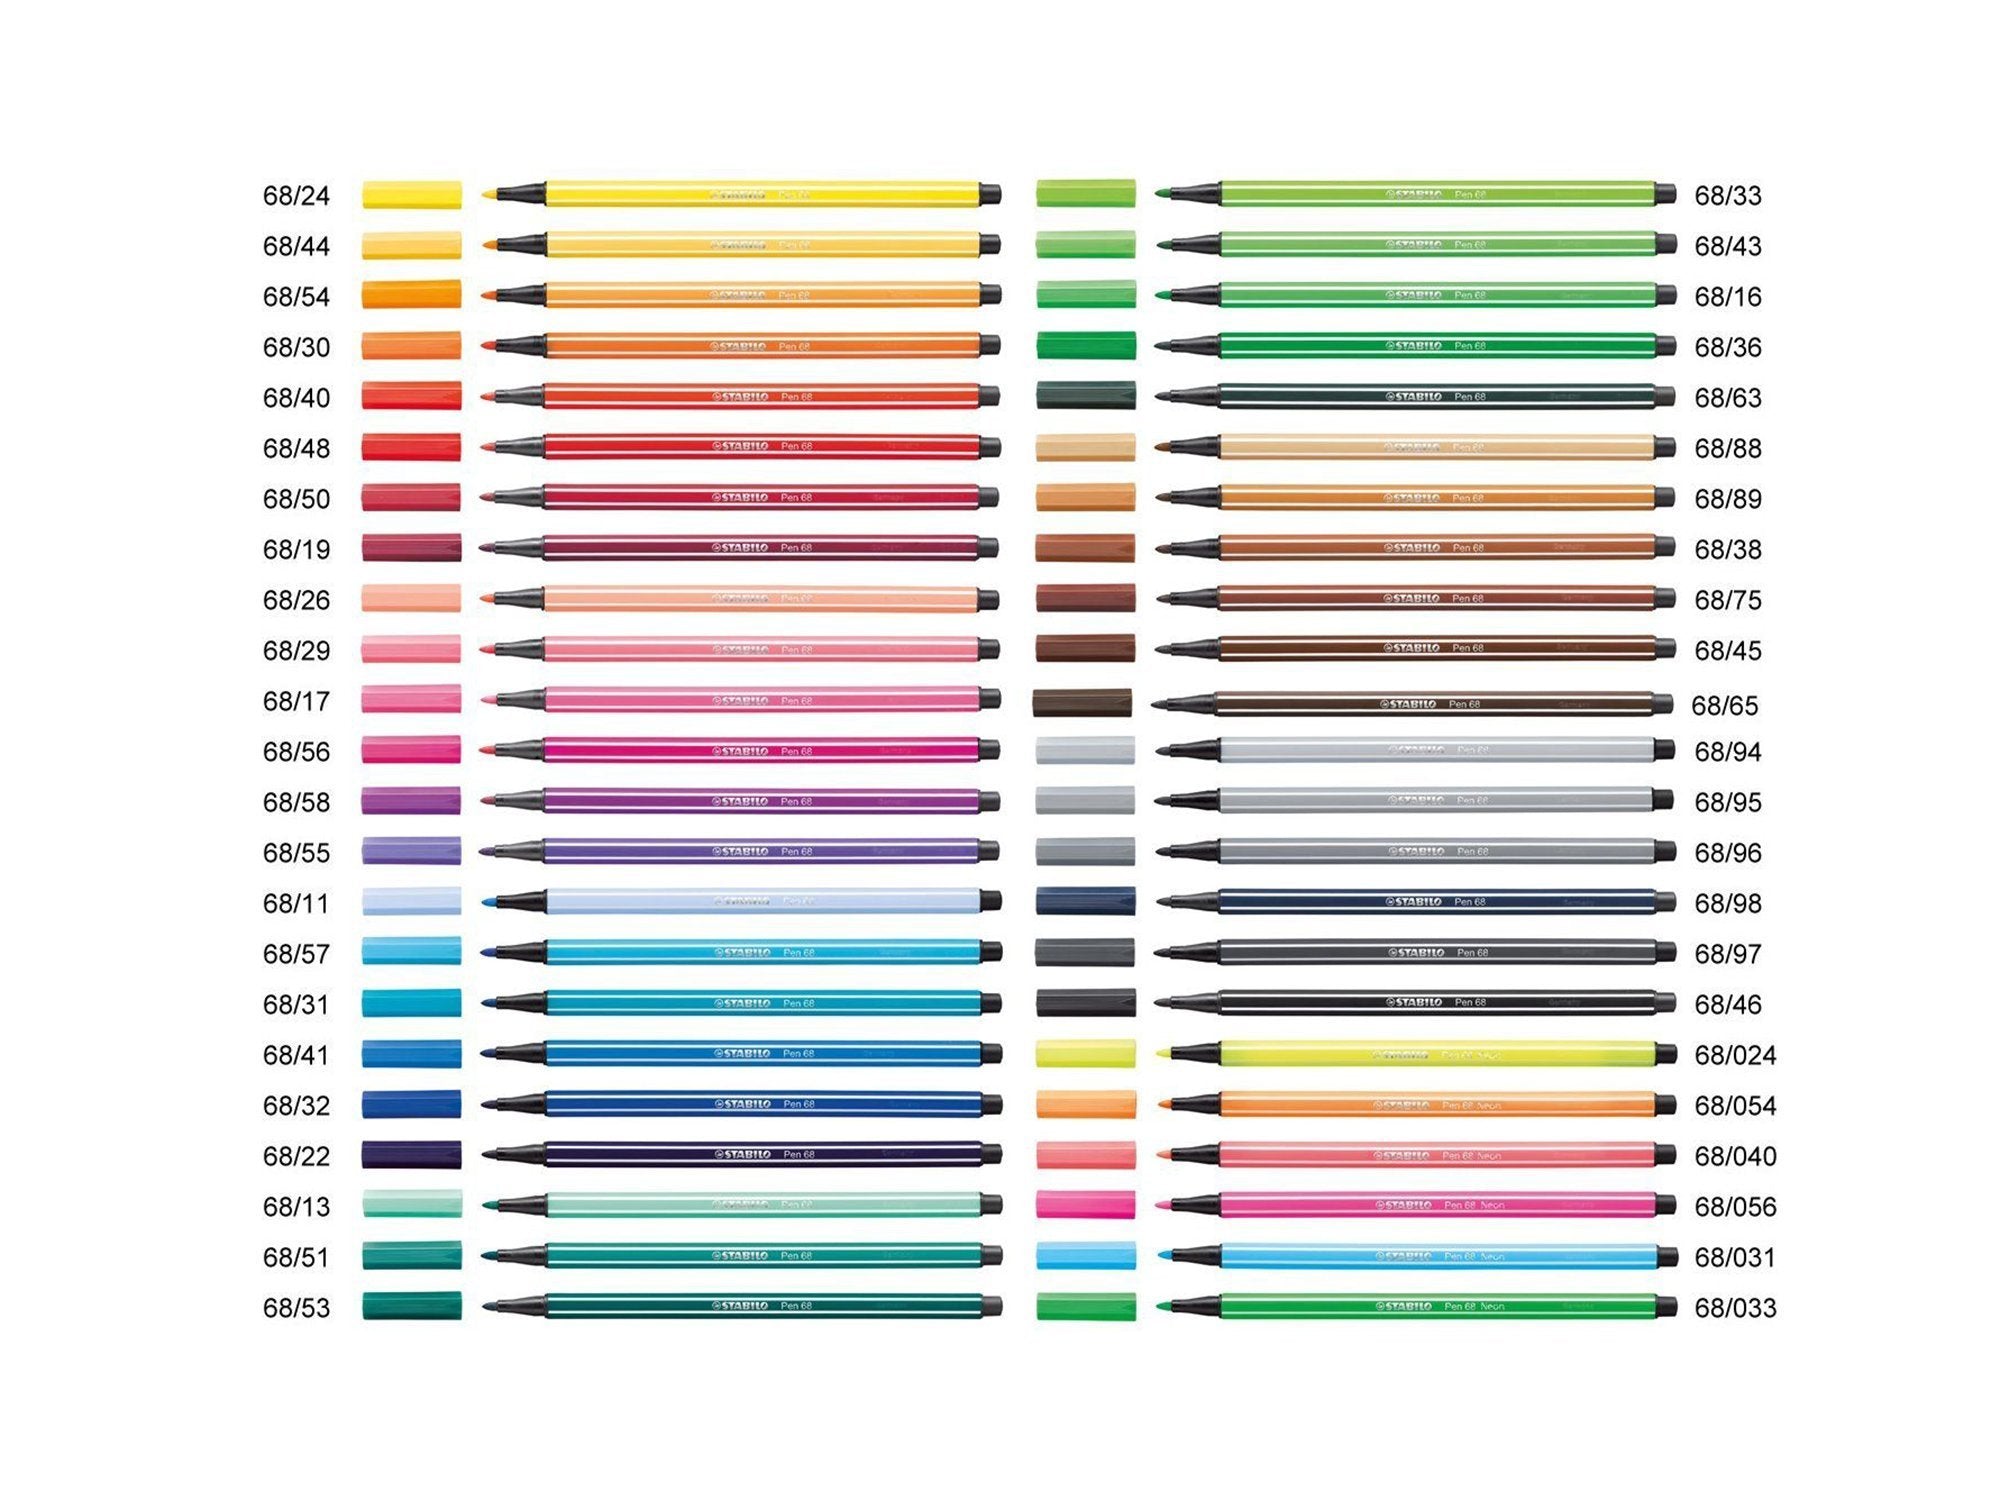 STABILO Pen 68 Brush, Set of 6